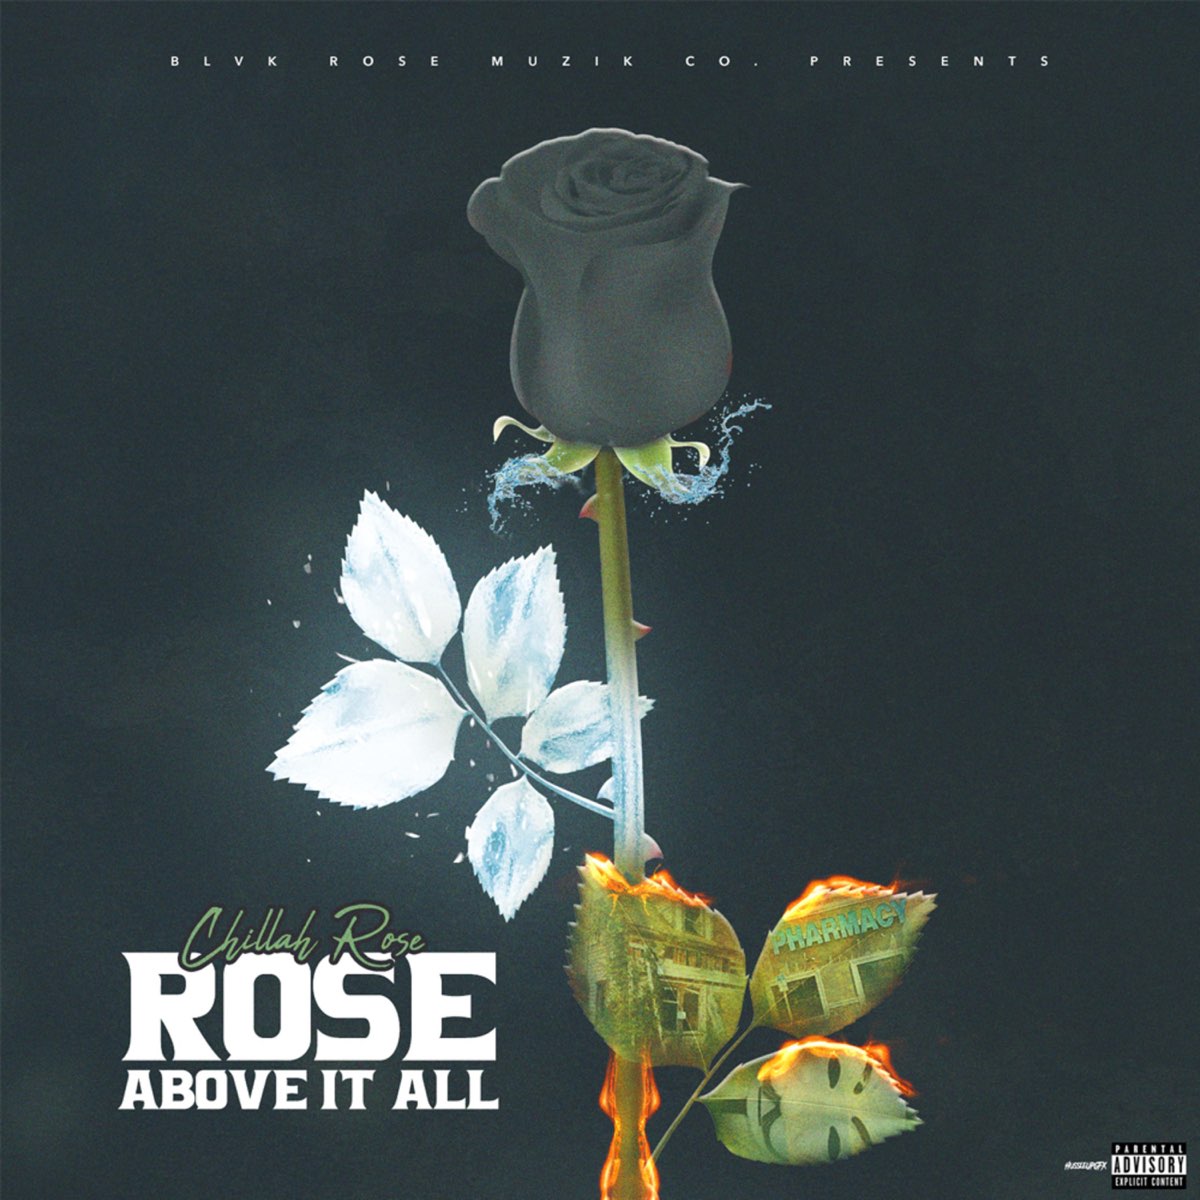 Roses песня. Initiate of Rosae Crucea order Rose above head.